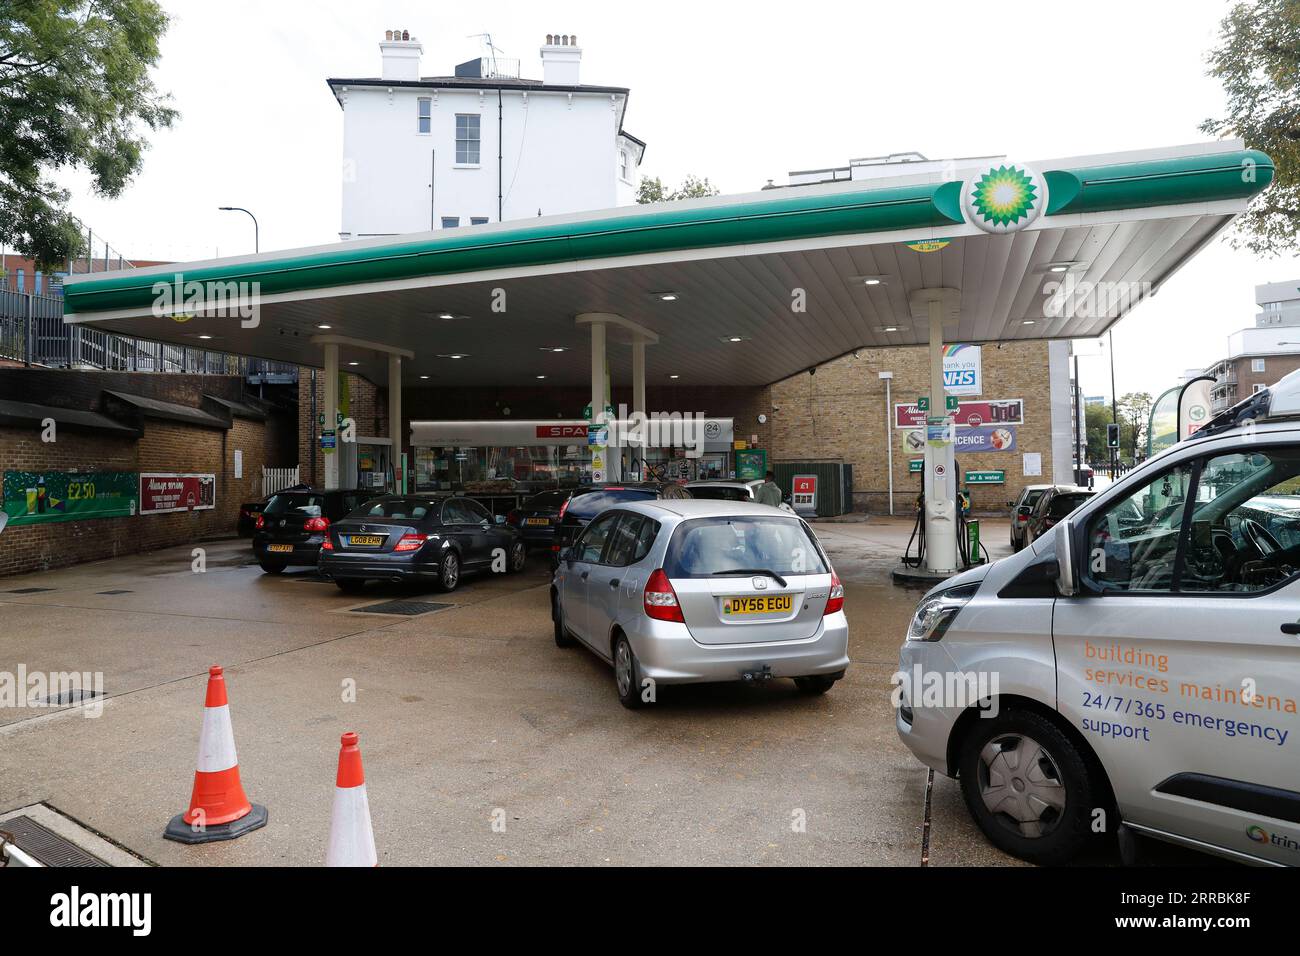 210927 -- LONDRA, 27 settembre 2021 -- i veicoli sono visti in una stazione di servizio a Londra, in Gran Bretagna, il 27 settembre 2021. Secondo la BBC, la Petrol Retailer Association nel Regno Unito ha avvertito che fino a due terzi dei suoi membri, che erano quasi 5.500 punti vendita indipendenti, sono senza carburante, mentre il resto è parzialmente asciutto e si sta esaurendo a breve. BRITAIN-LONDON-BENZINAIO-FUEL-SHORTAGE HANXYAN PUBLICATIONXNOTXINXCHN Foto Stock